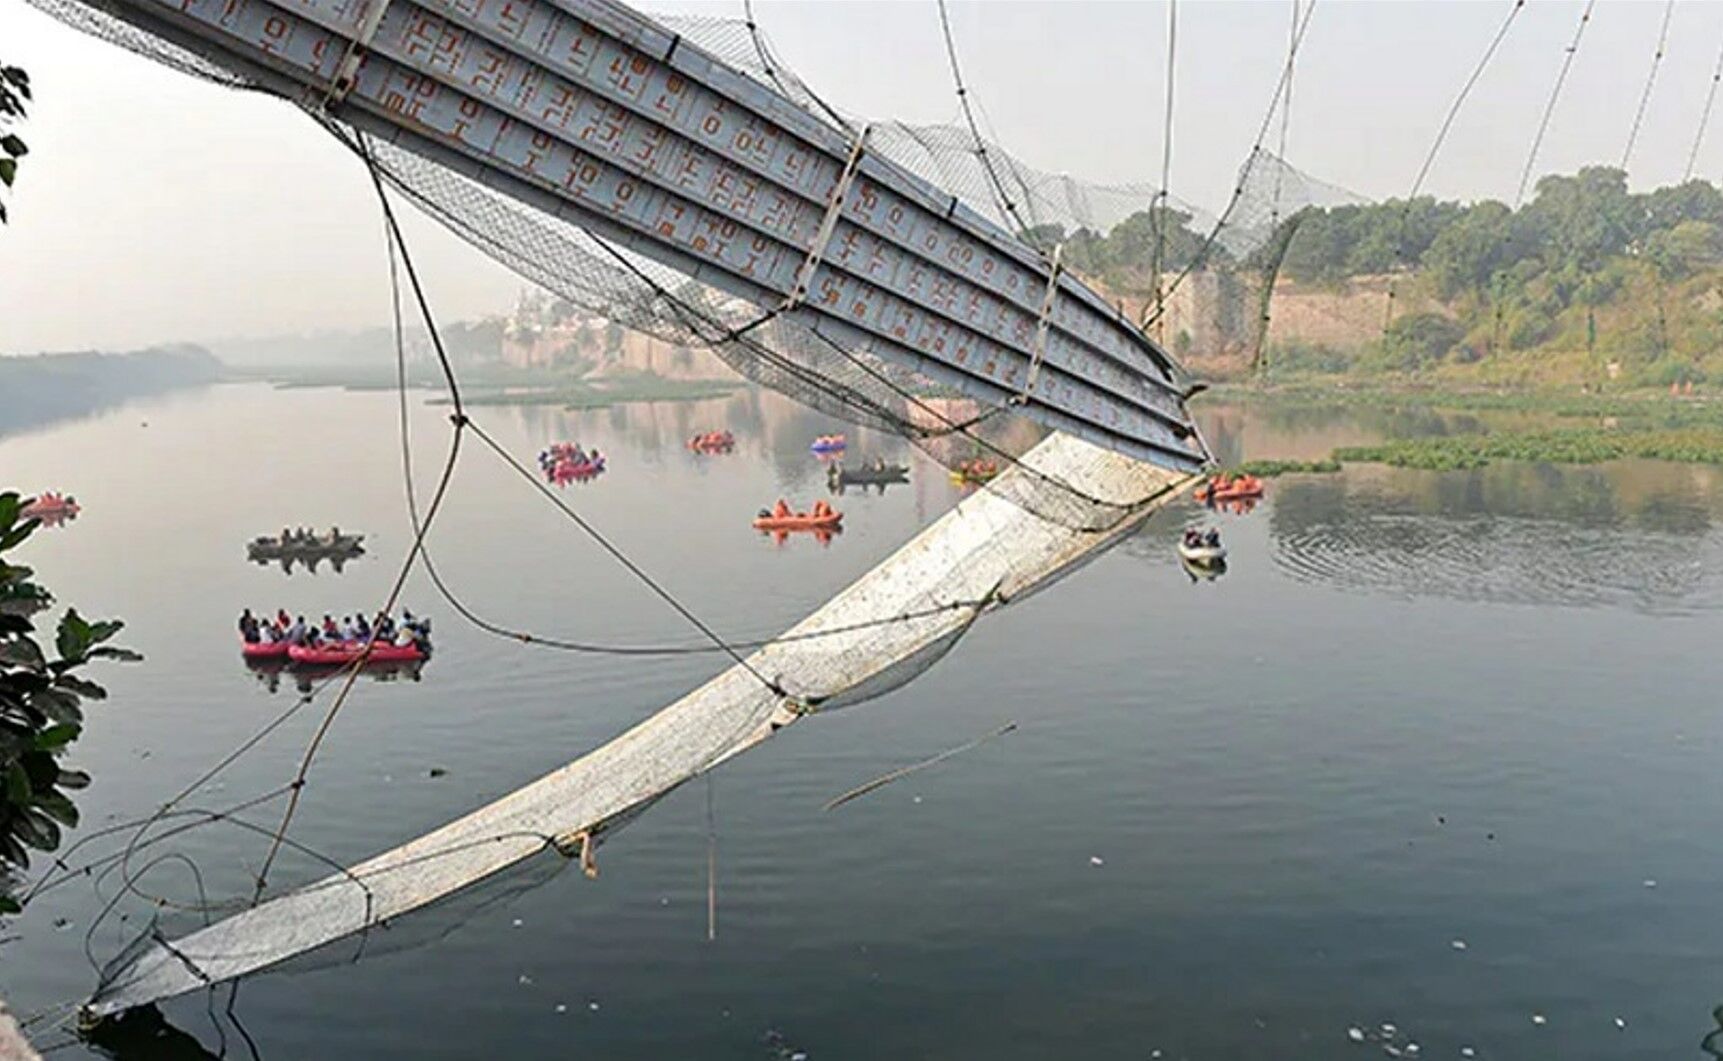 Morbi Bridge Accident: मोरबी पुल हादसे पर आज सुनवाई करेगा सुप्रीम कोर्ट, 135 लोगों की हुई मौत